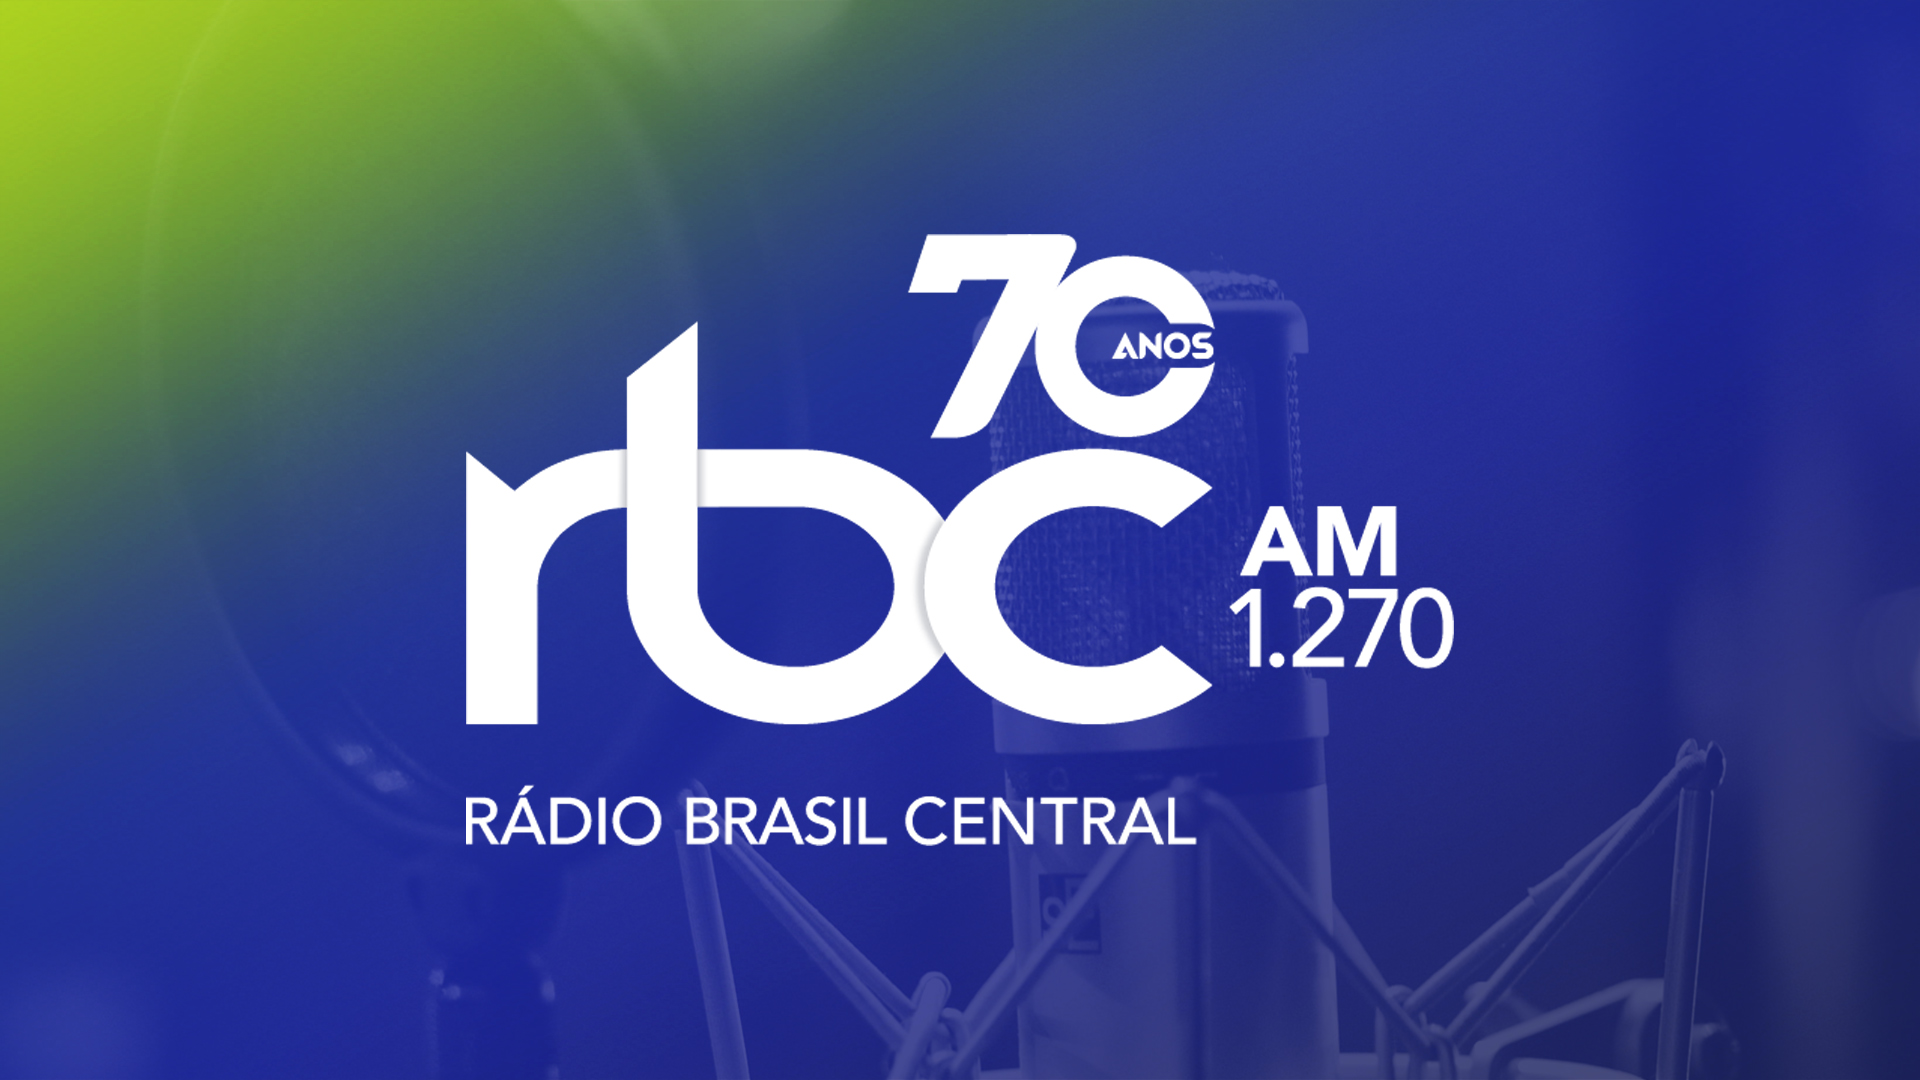 Imagem alusiva aos 70 anos da Rádio Brasil Central